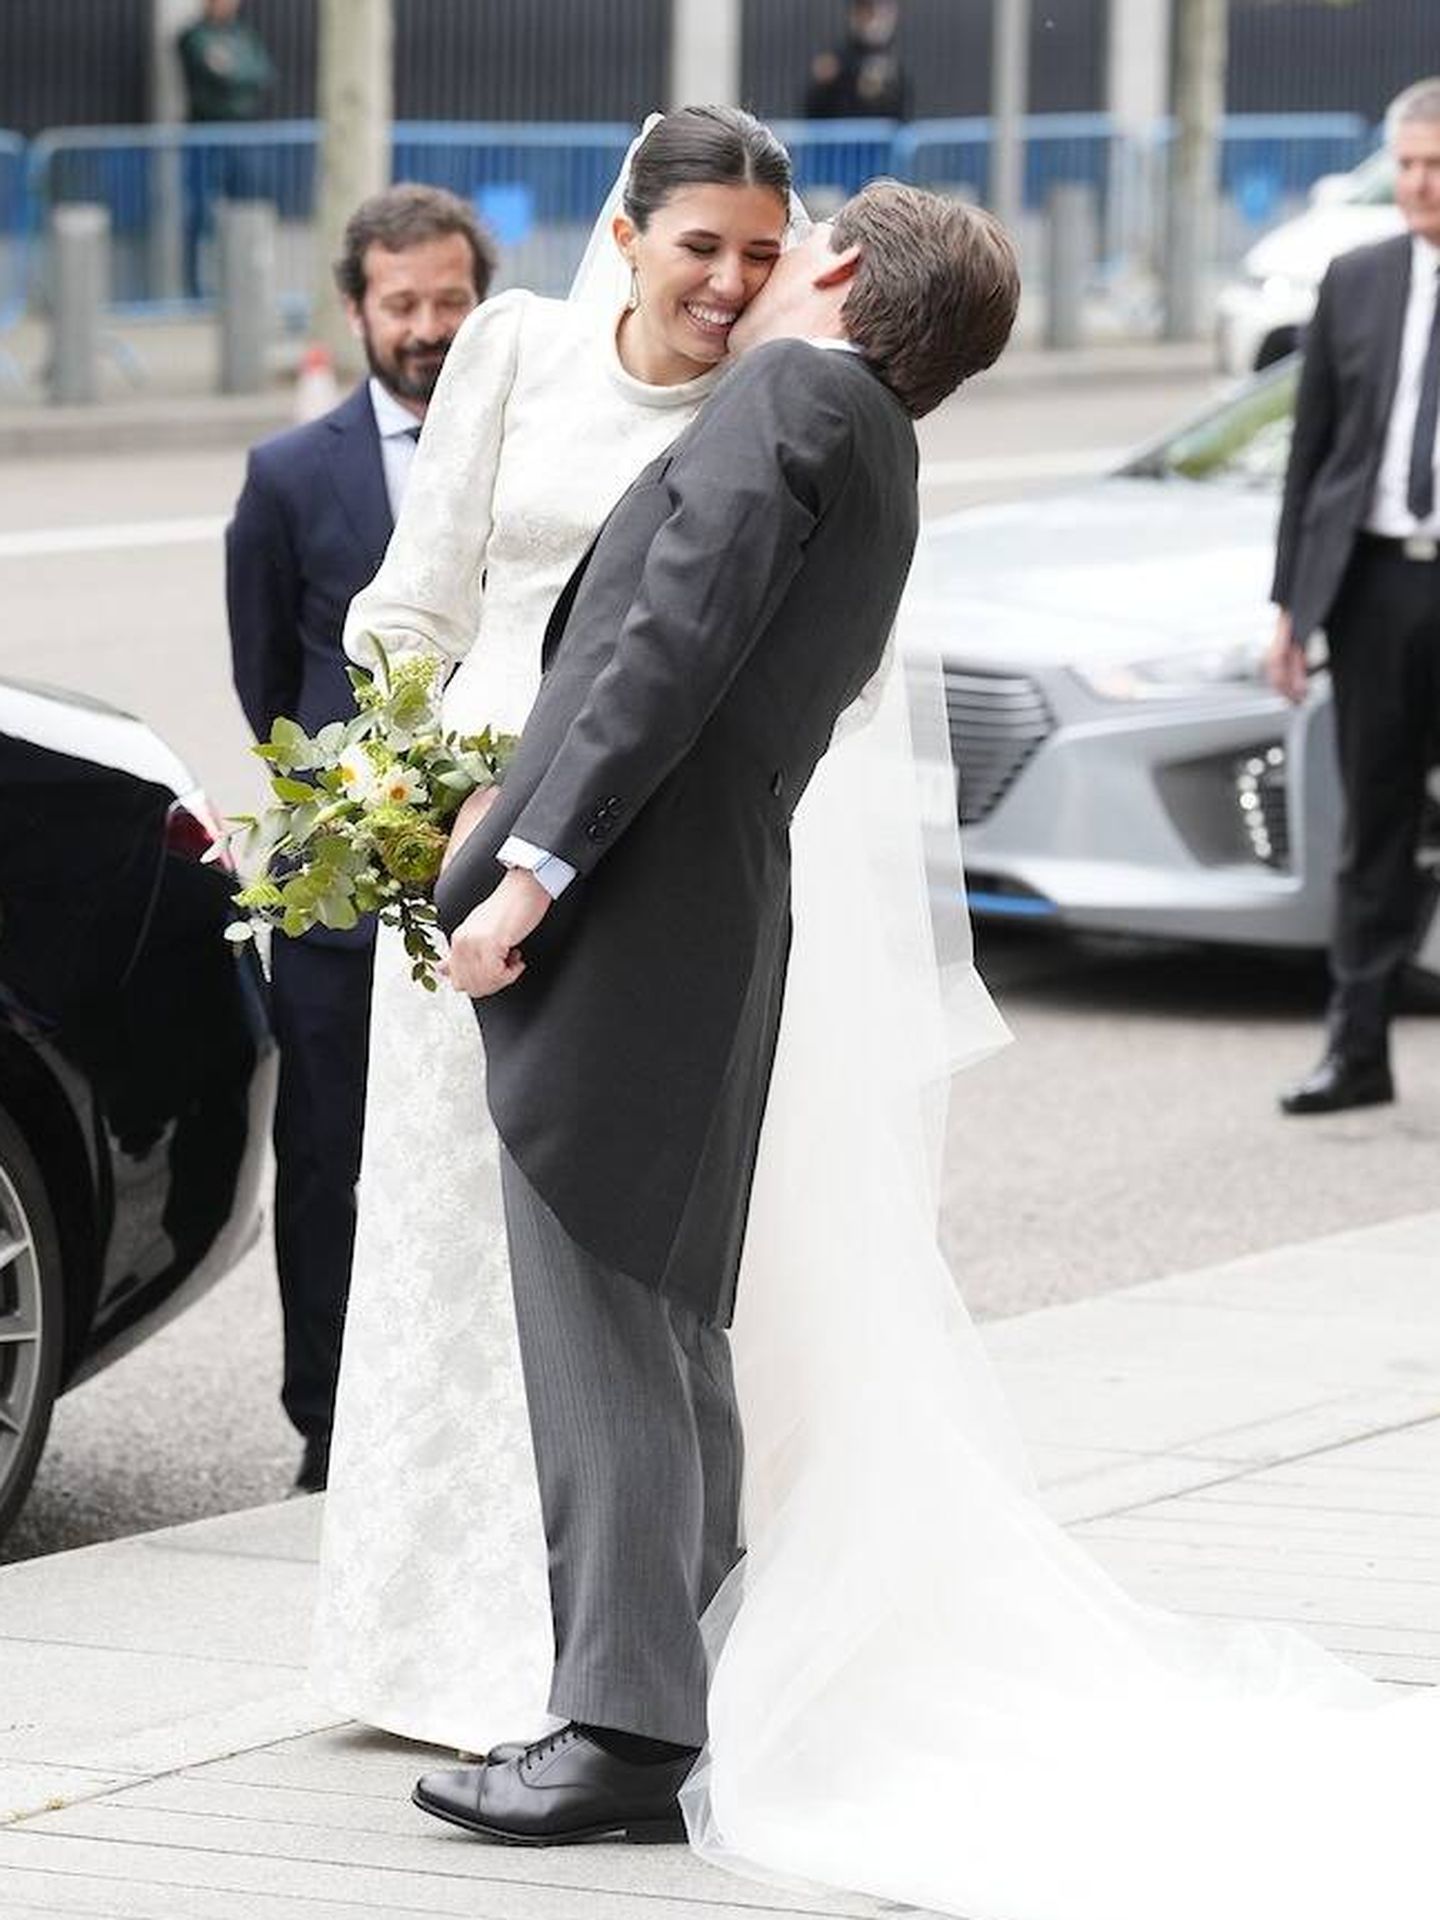 El tierno beso en la mejilla tras su boda entre Martínez-Almeida y Teresa Urquijo. (LP)